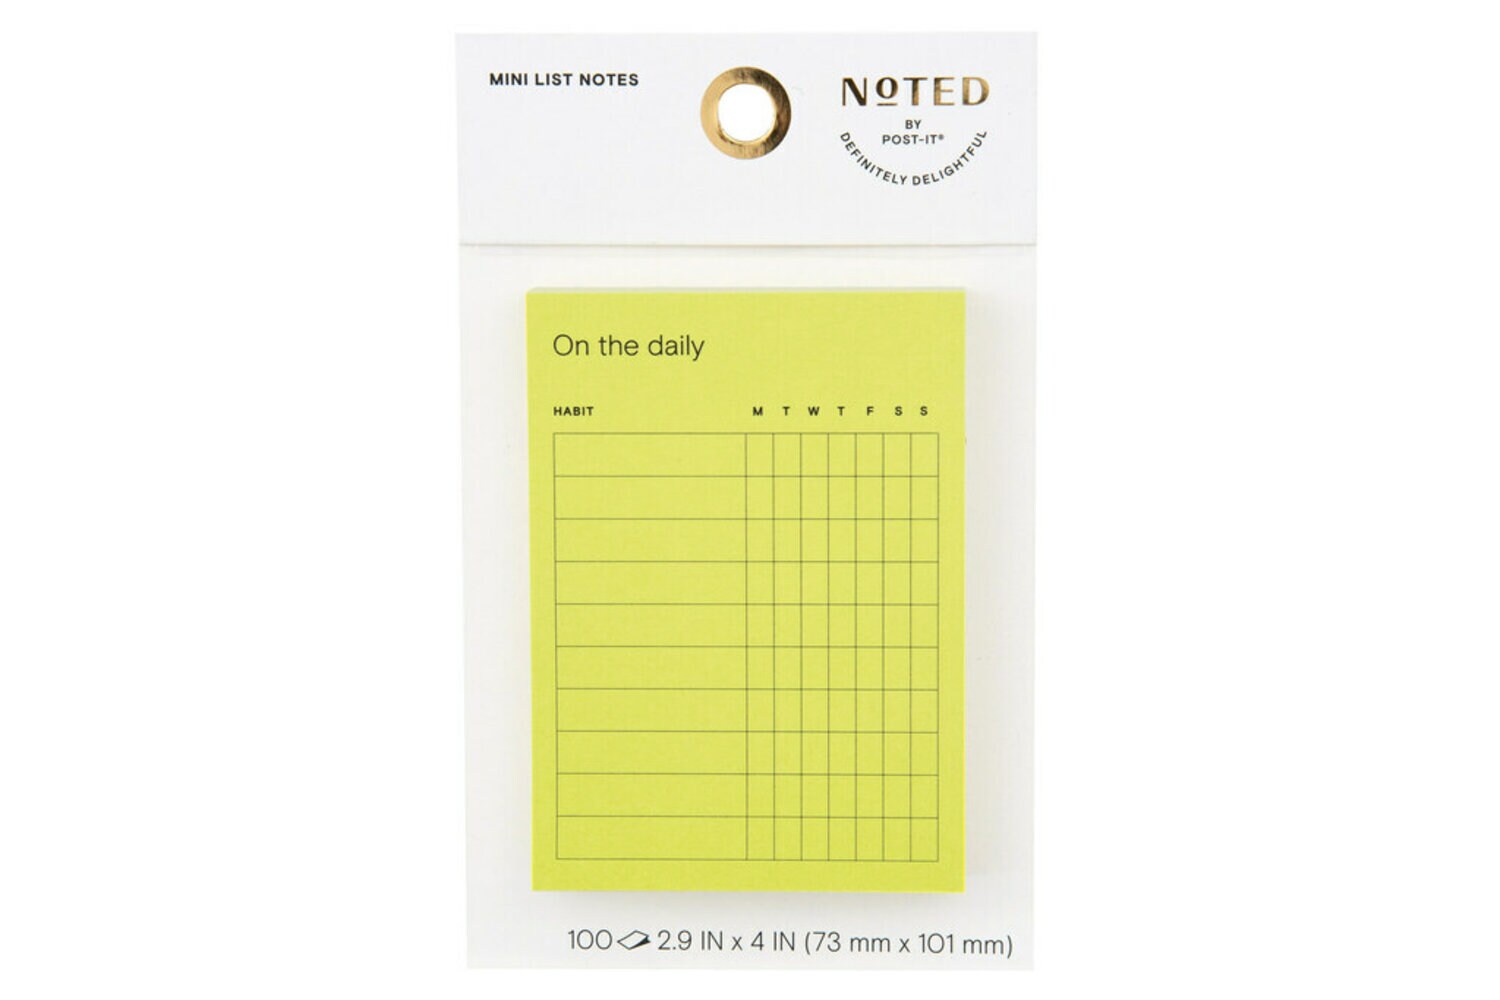 7100306263 - Post-it Mini List Notes NTD8-34-2, 4 in x 2.9 in (101 mm x 73 mm)